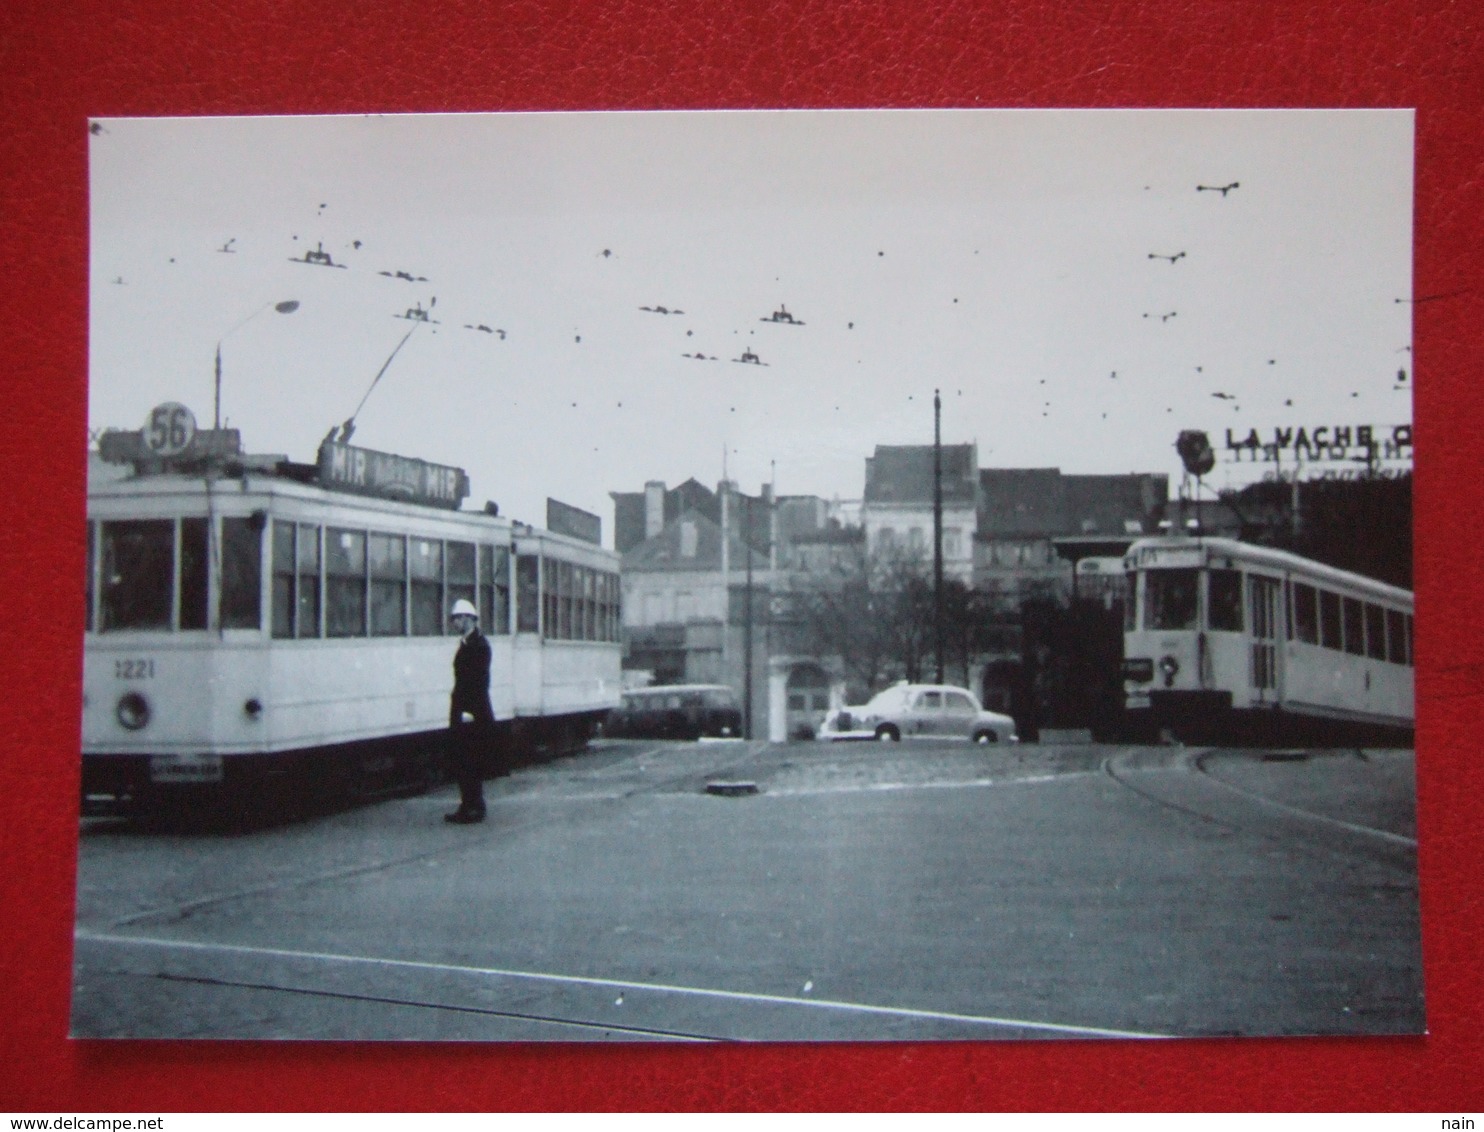 BELGIQUE - BRUXELLES - PHOTO 15 X 10 - TRAM - TRAMWAY - LIGNE 56 - PUB : LA VACHE QUI..- 1 AGENT ... - Transporte Público